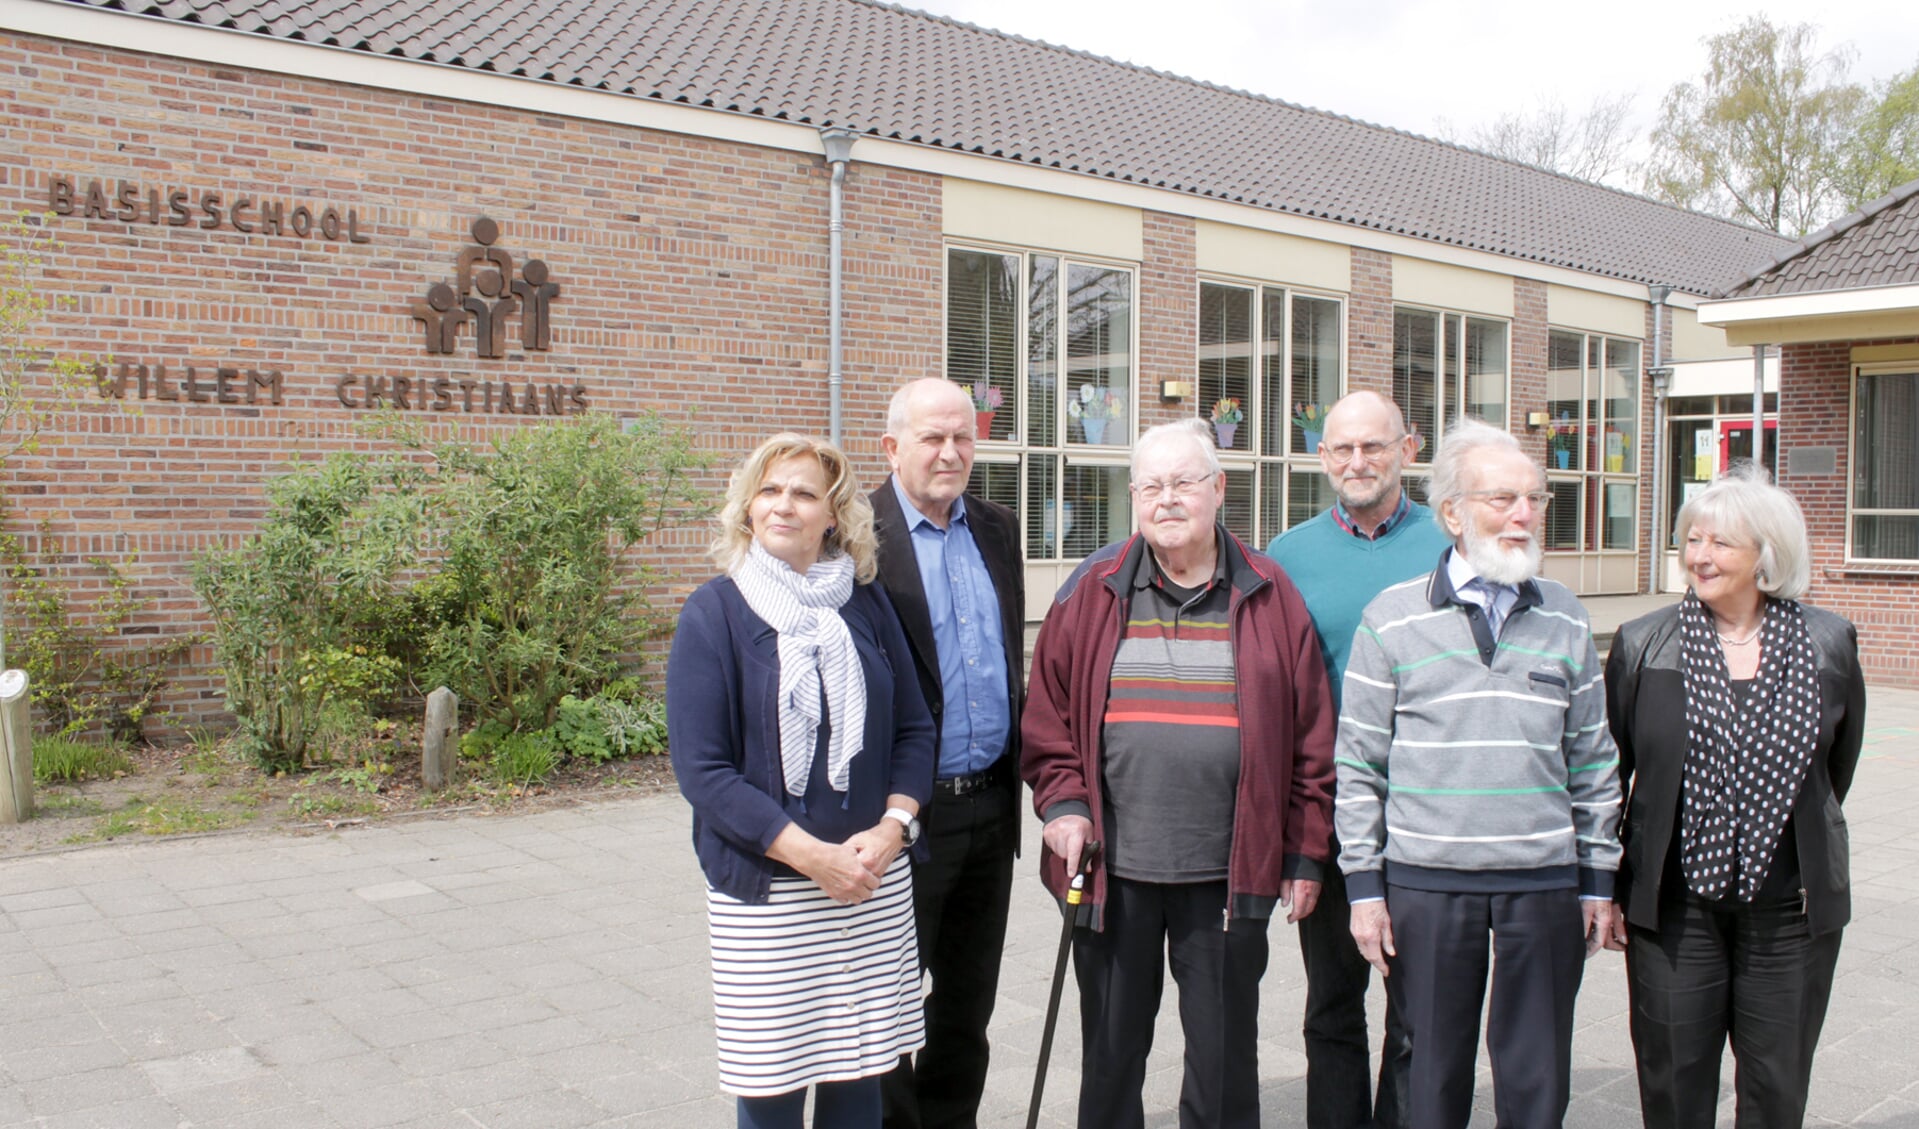 V.l.n.r.: Marianne van den Boomen, Rien van de Steeg, Henk Vesters, Frans Trimbach, Theo Pollemans en Ria Pollemans.